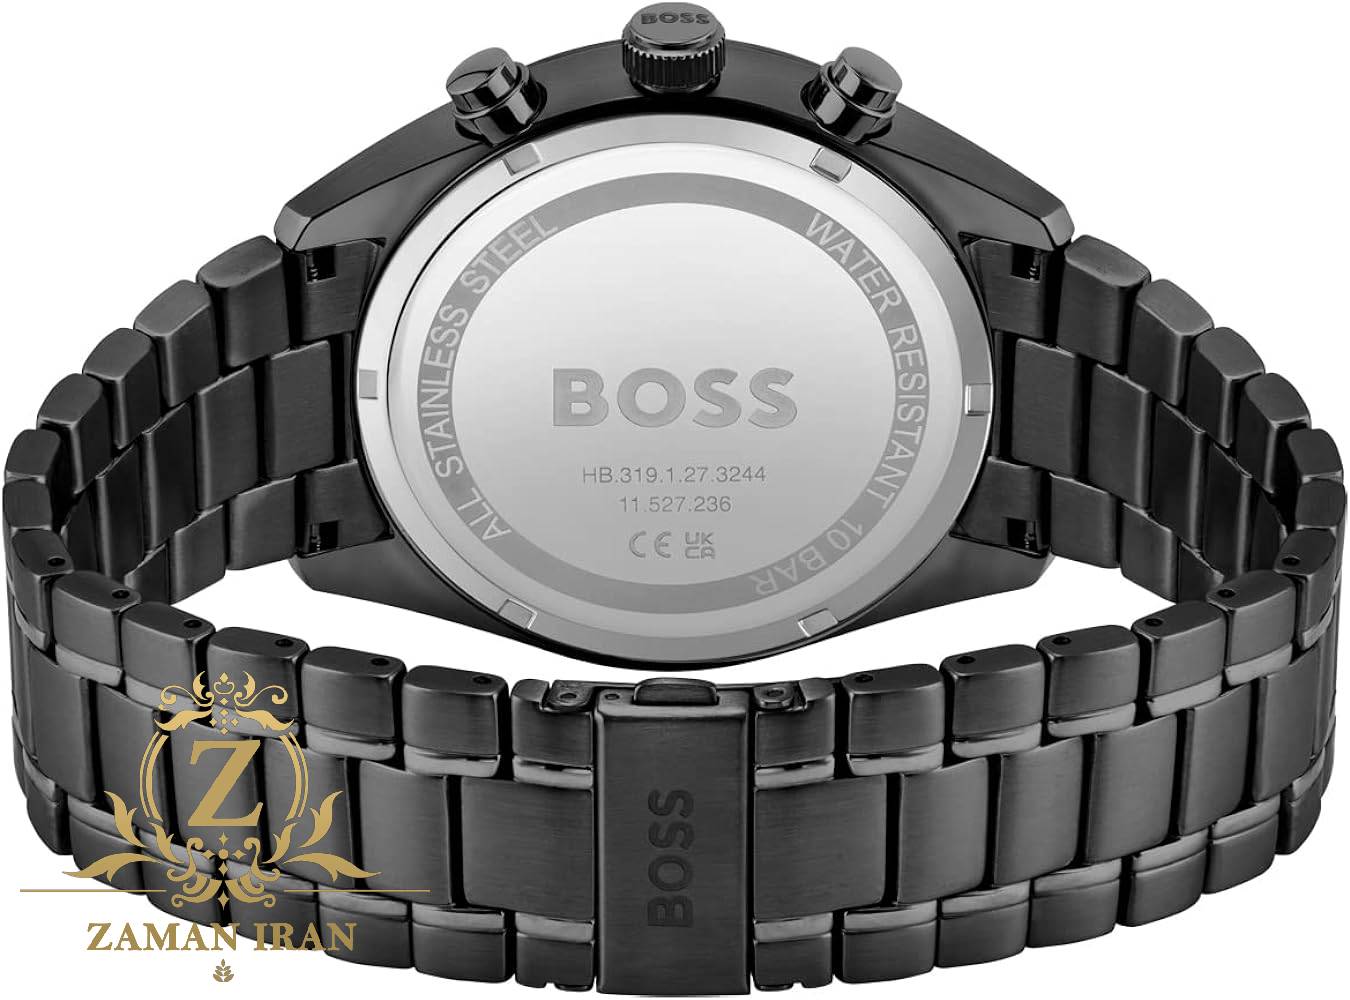 ساعت مچی مردانه هوگو بوس Hugo Boss اورجینال مدل 1513960